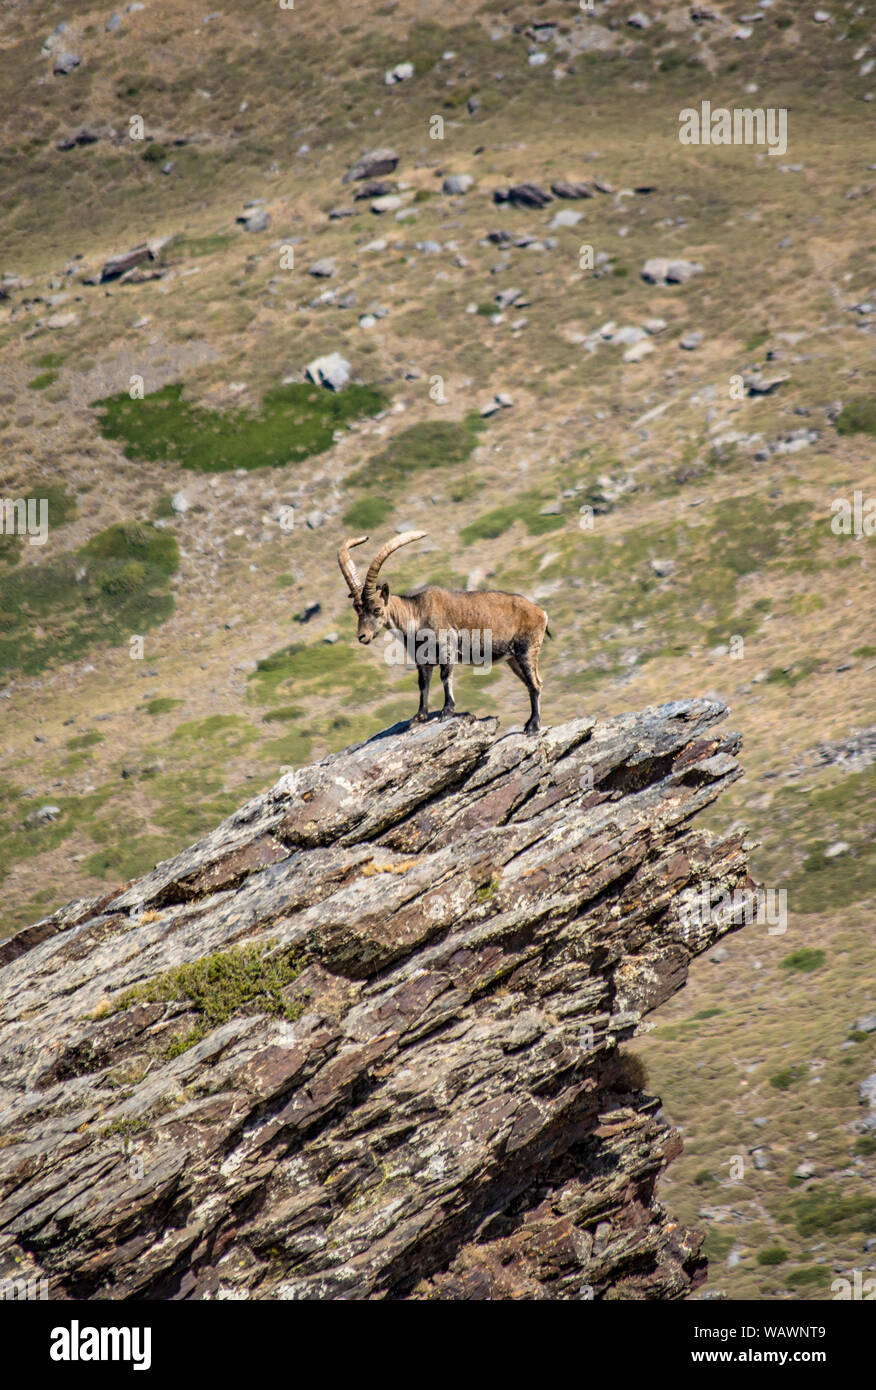 Ibex Espagnol Espagnol, chèvre sauvage, ou chèvre sauvage ibérique (Capra pyrenaica), sur la pointe d'un rocher. La Sierra Nevada, Granada, Espagne. Banque D'Images